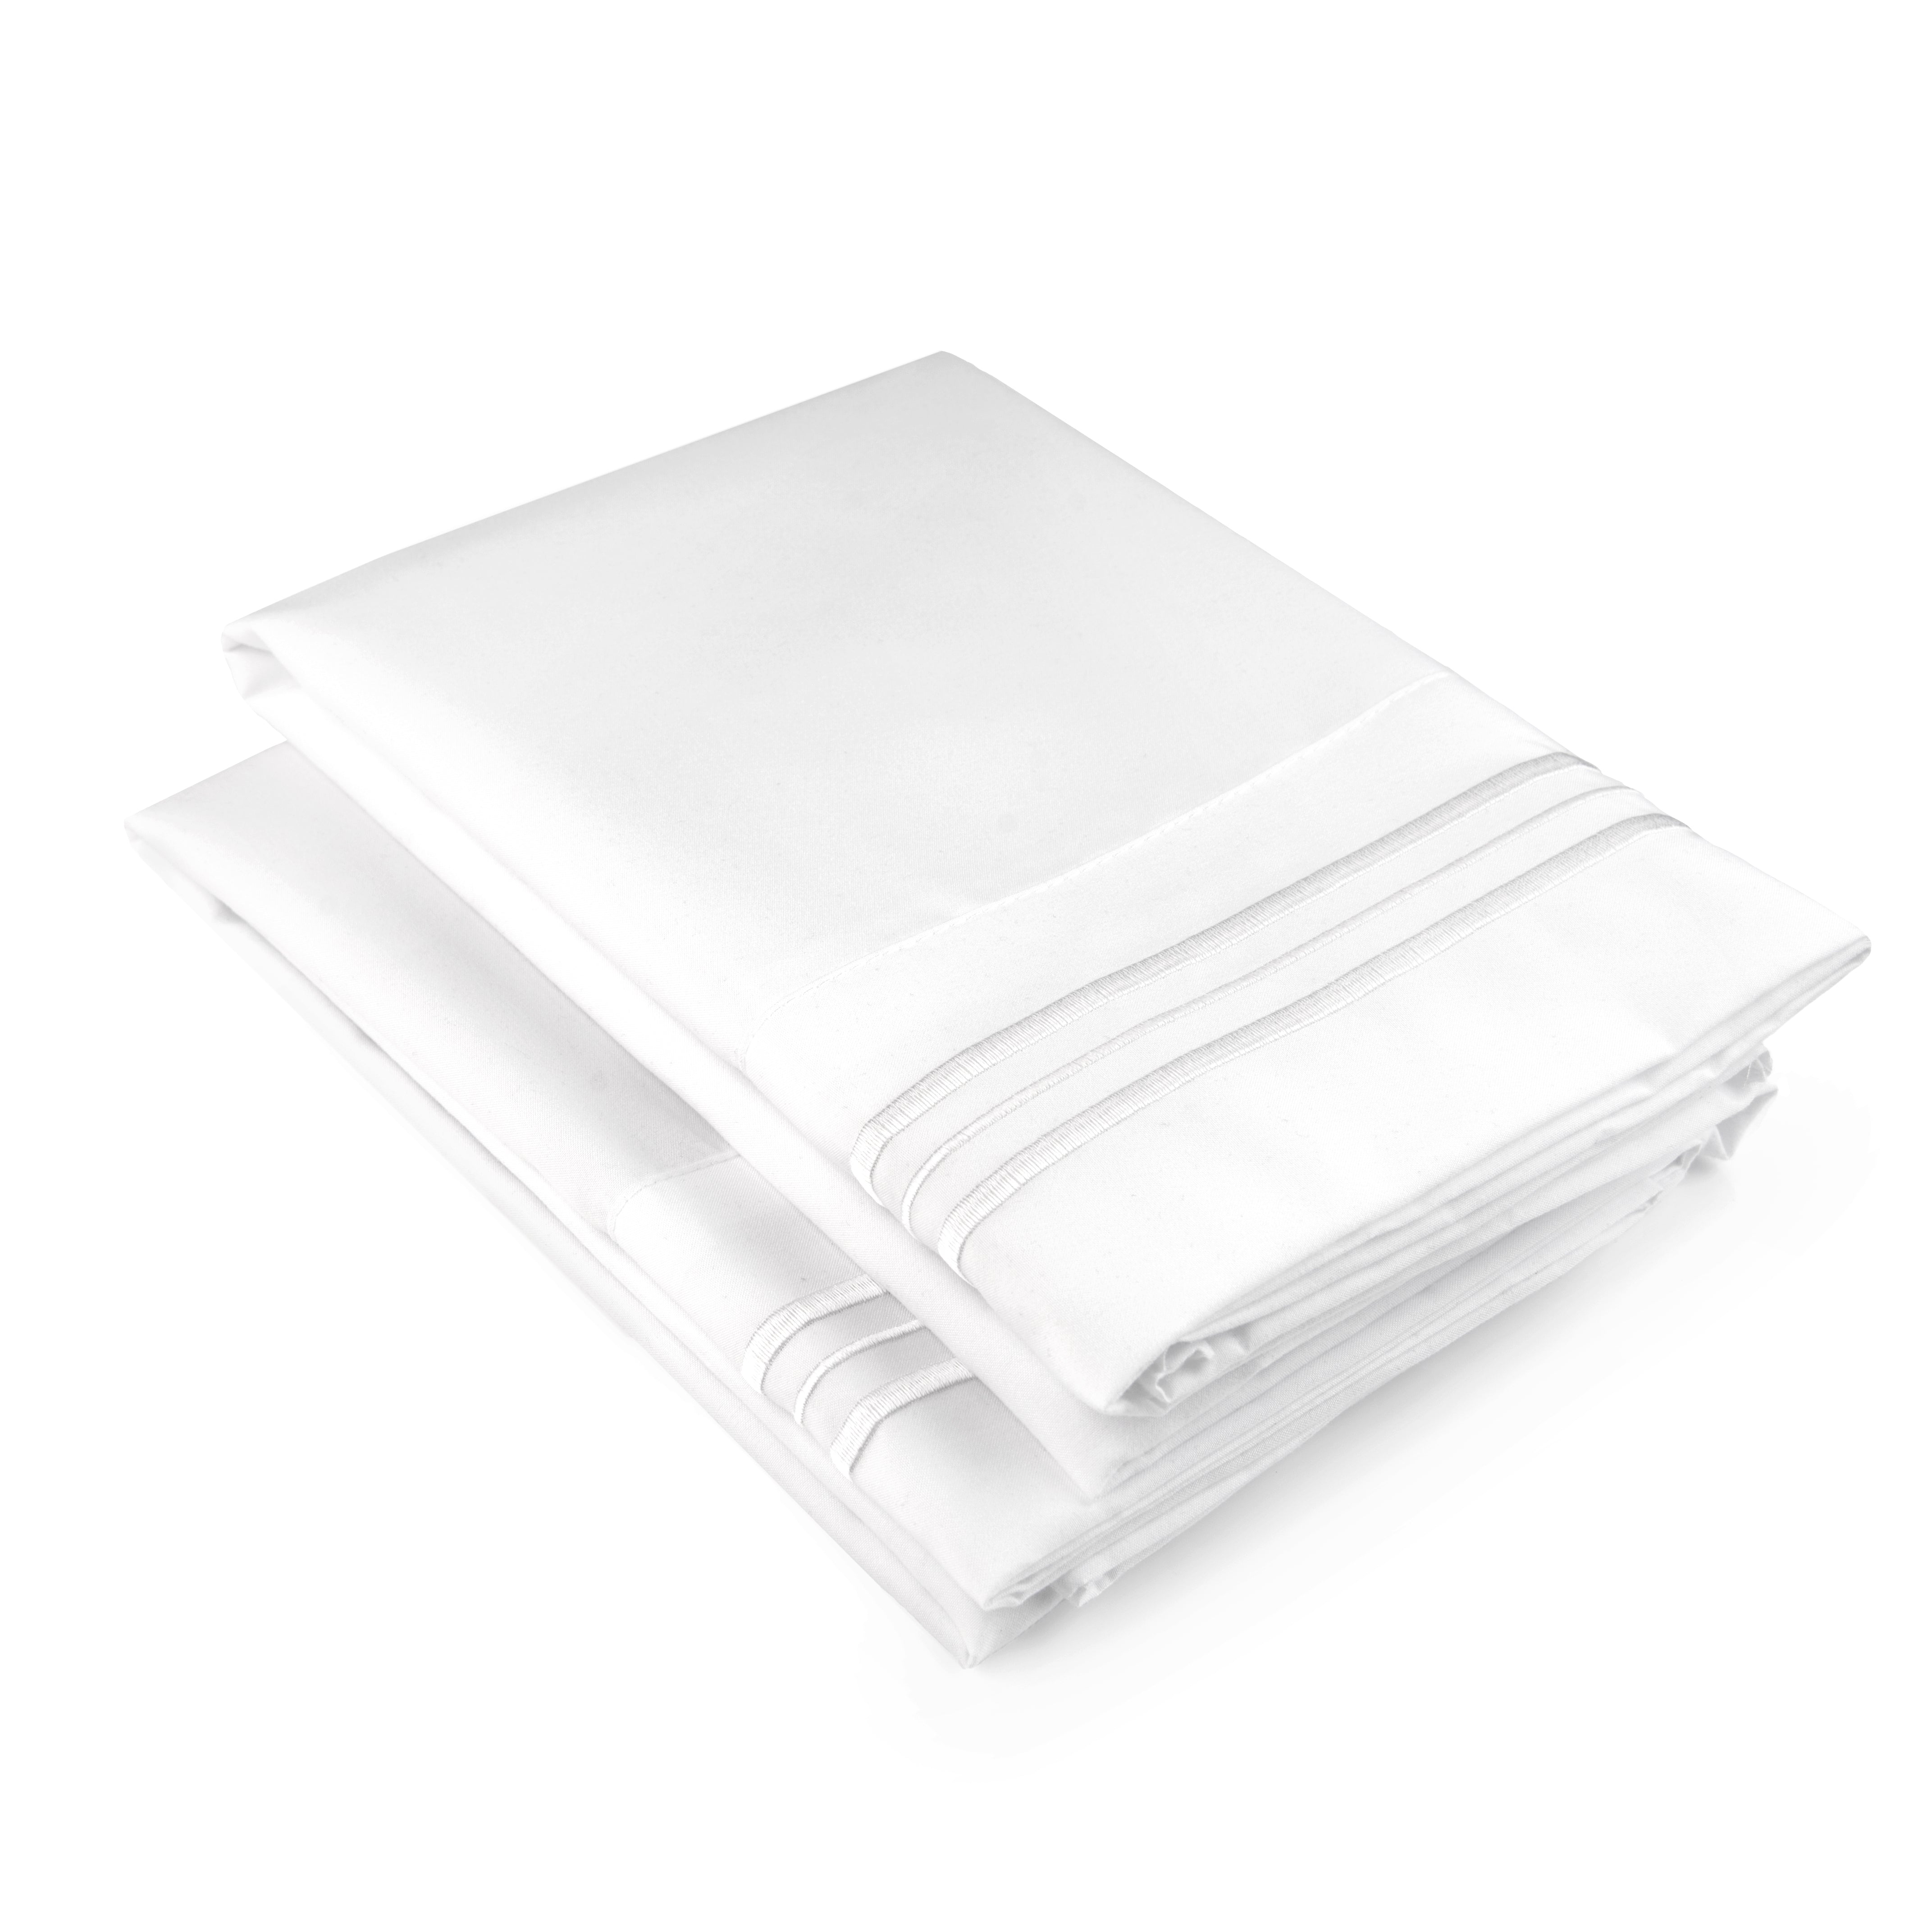 2 Pillowcase Set - White